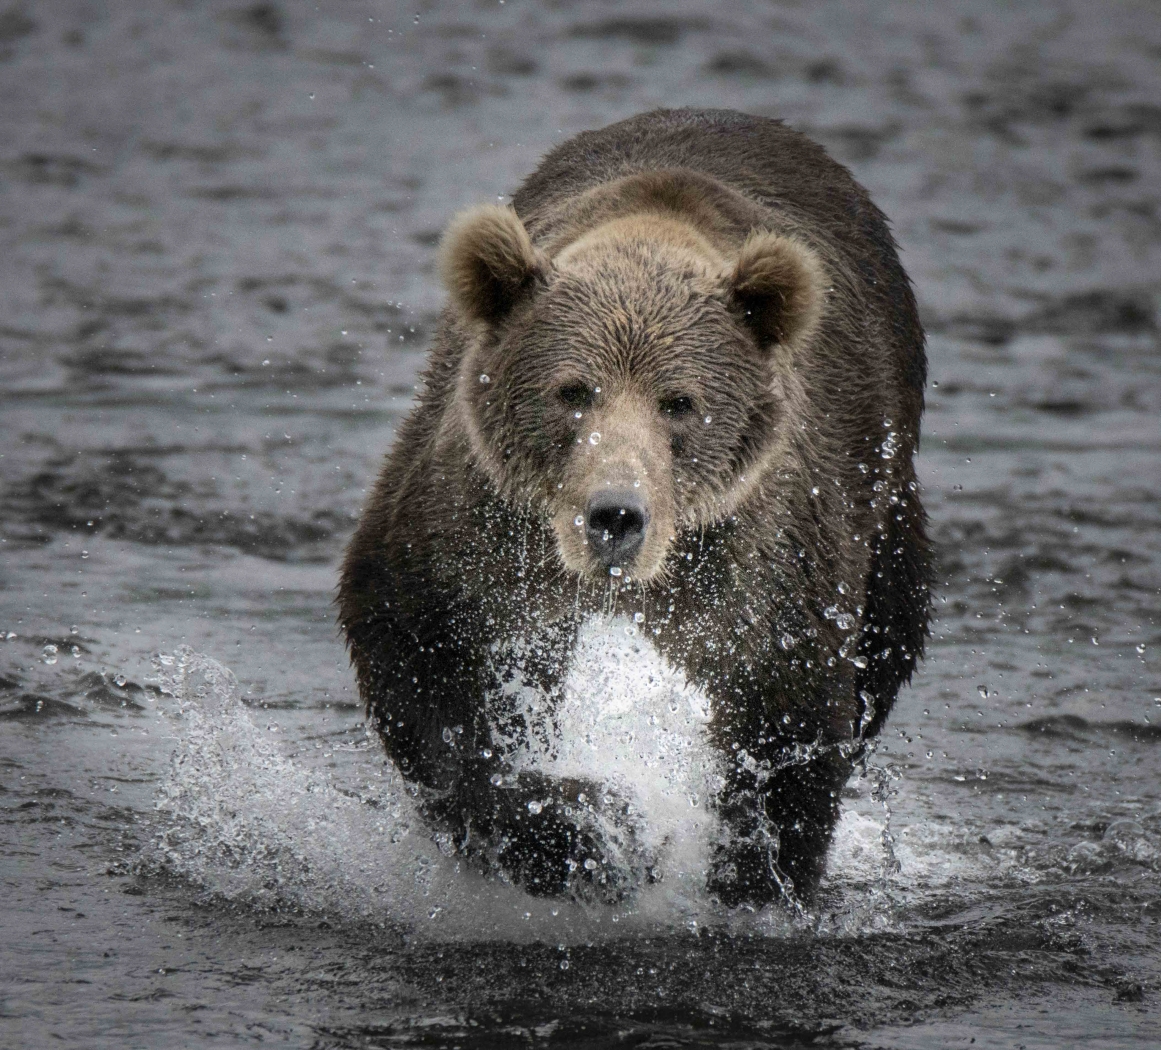 Kodiak bear in Water by Danielle D'Ermo